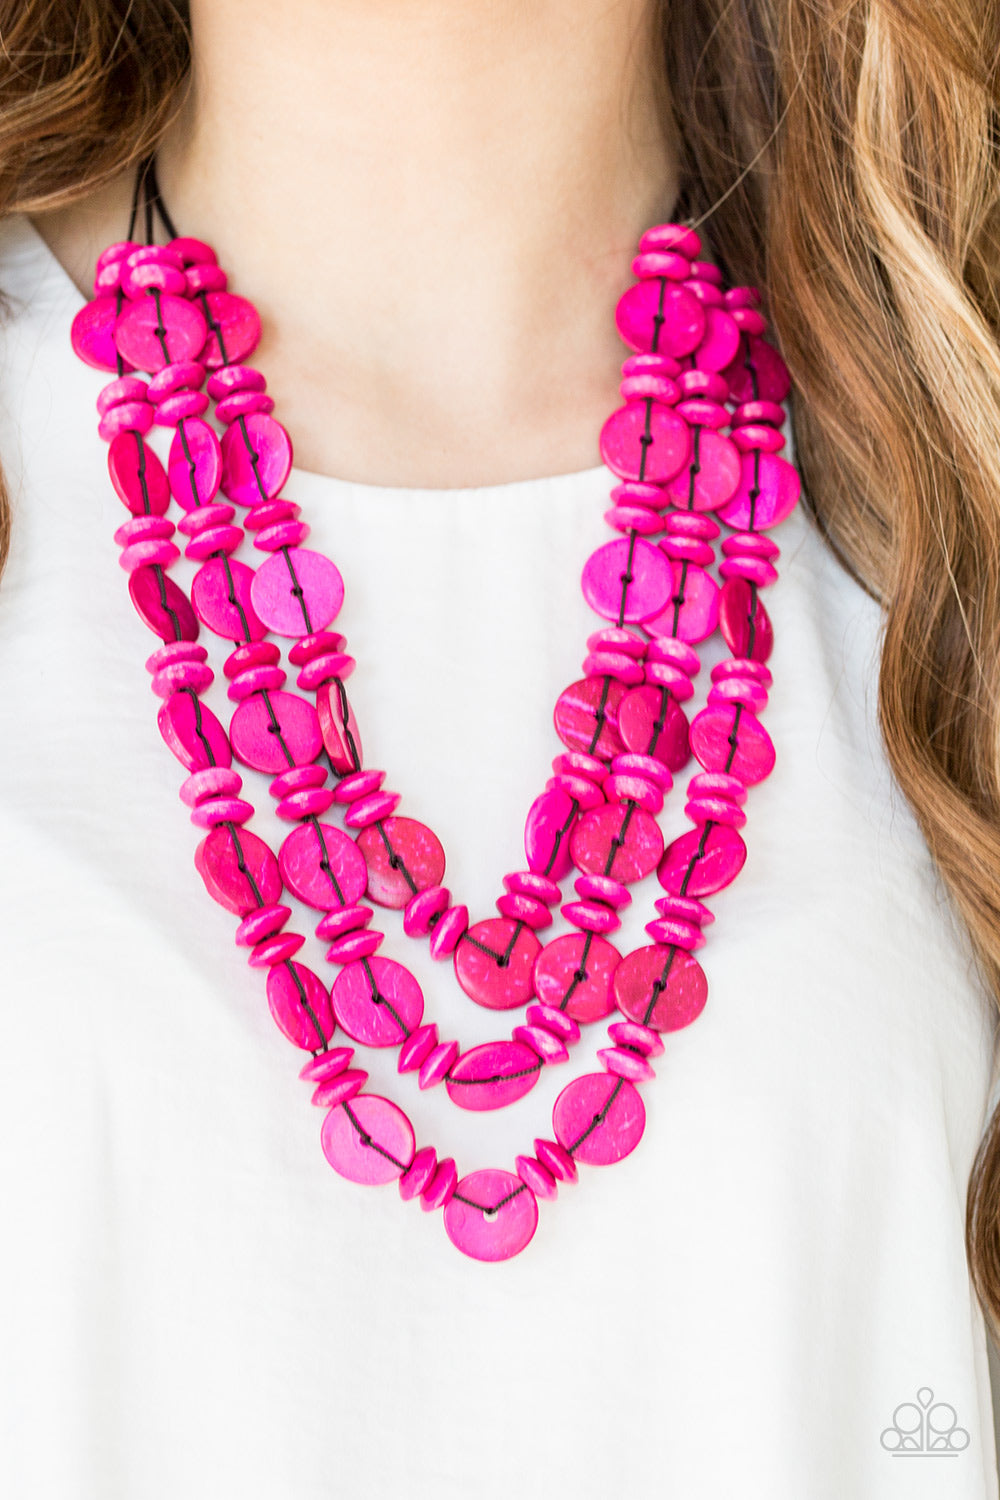 Barbados Bopper Necklaces - Pink